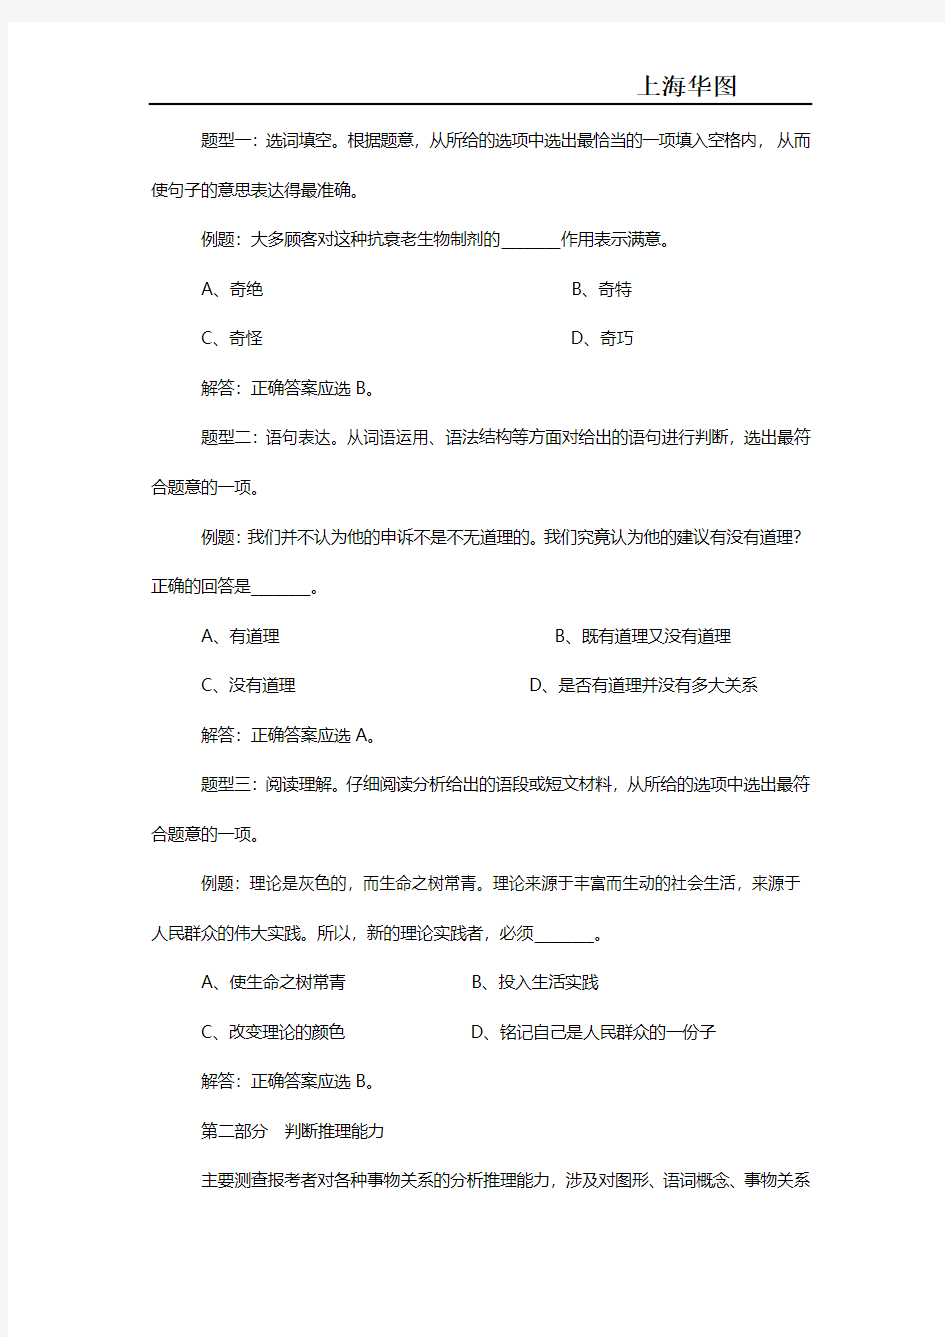 上海市2016上半年事业单位招聘考试大纲